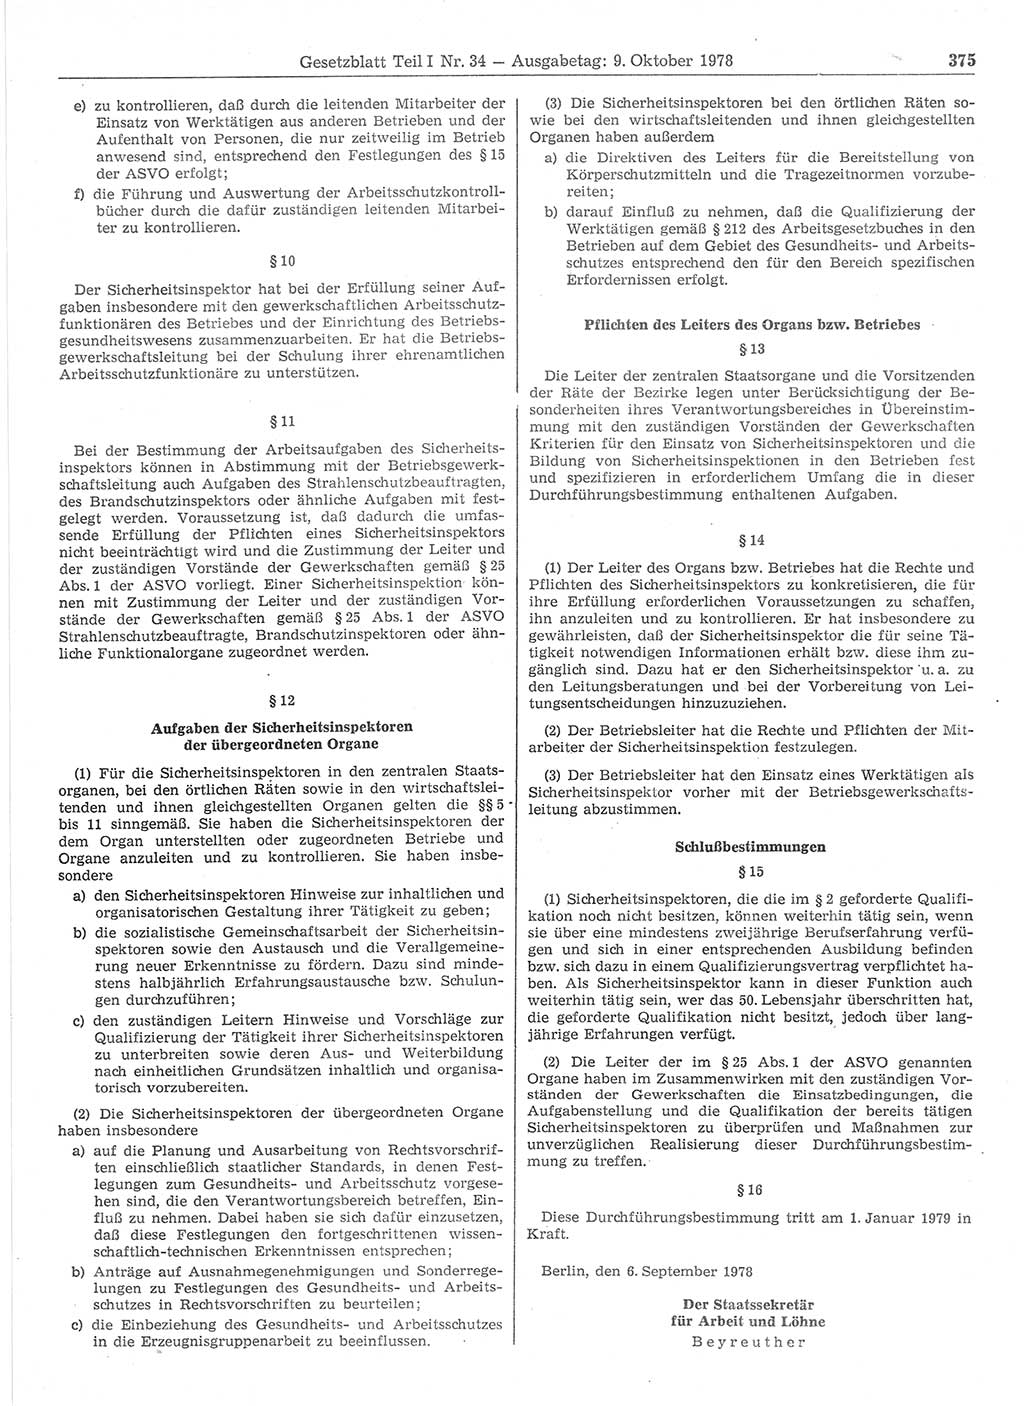 Gesetzblatt (GBl.) der Deutschen Demokratischen Republik (DDR) Teil Ⅰ 1978, Seite 375 (GBl. DDR Ⅰ 1978, S. 375)